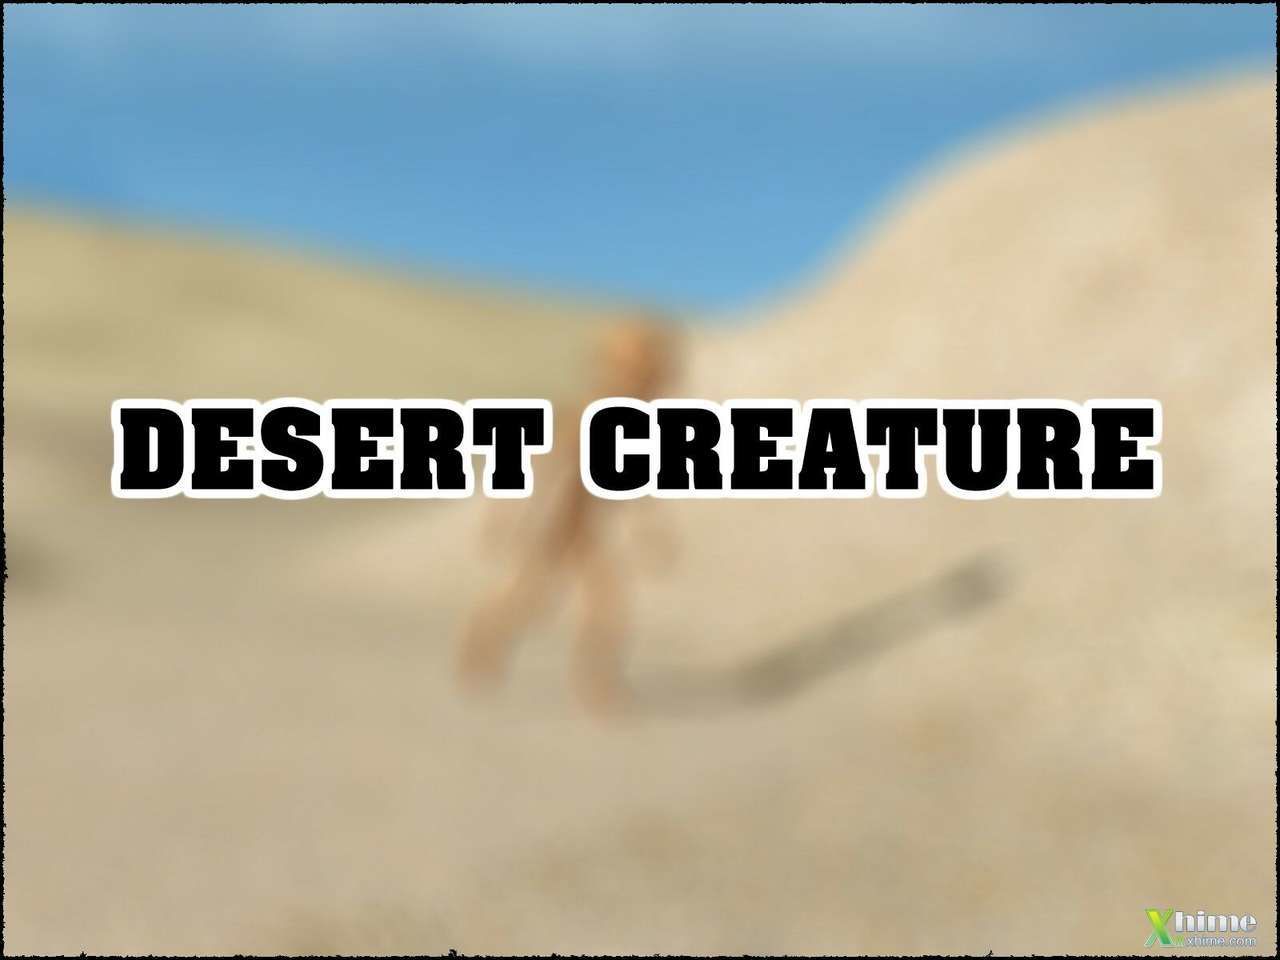 Deserto criatura